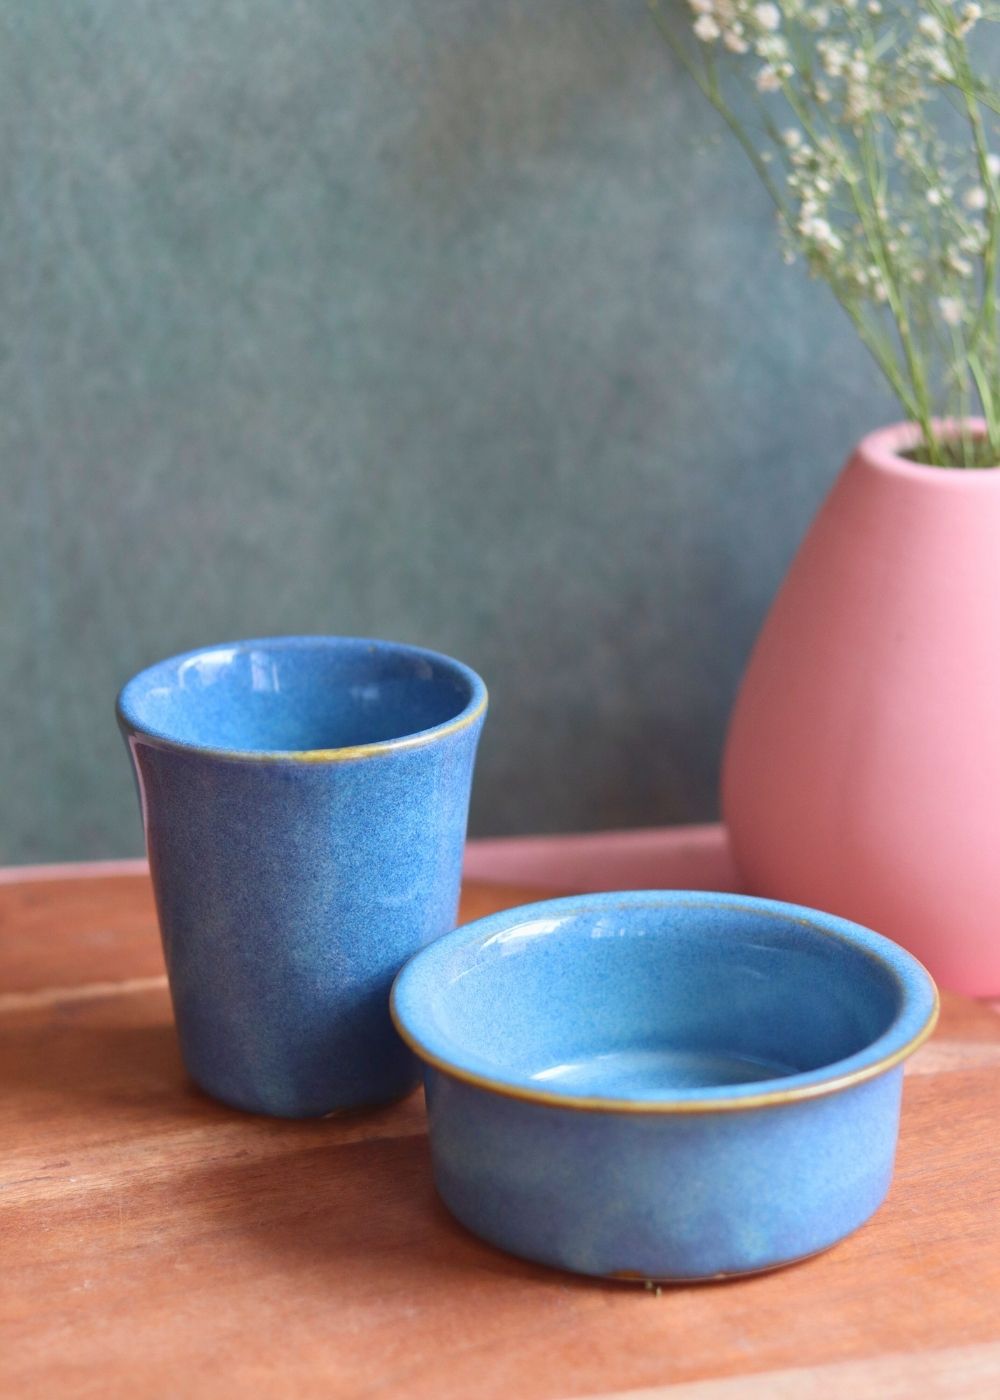 auro blue dabara set made by ceramic